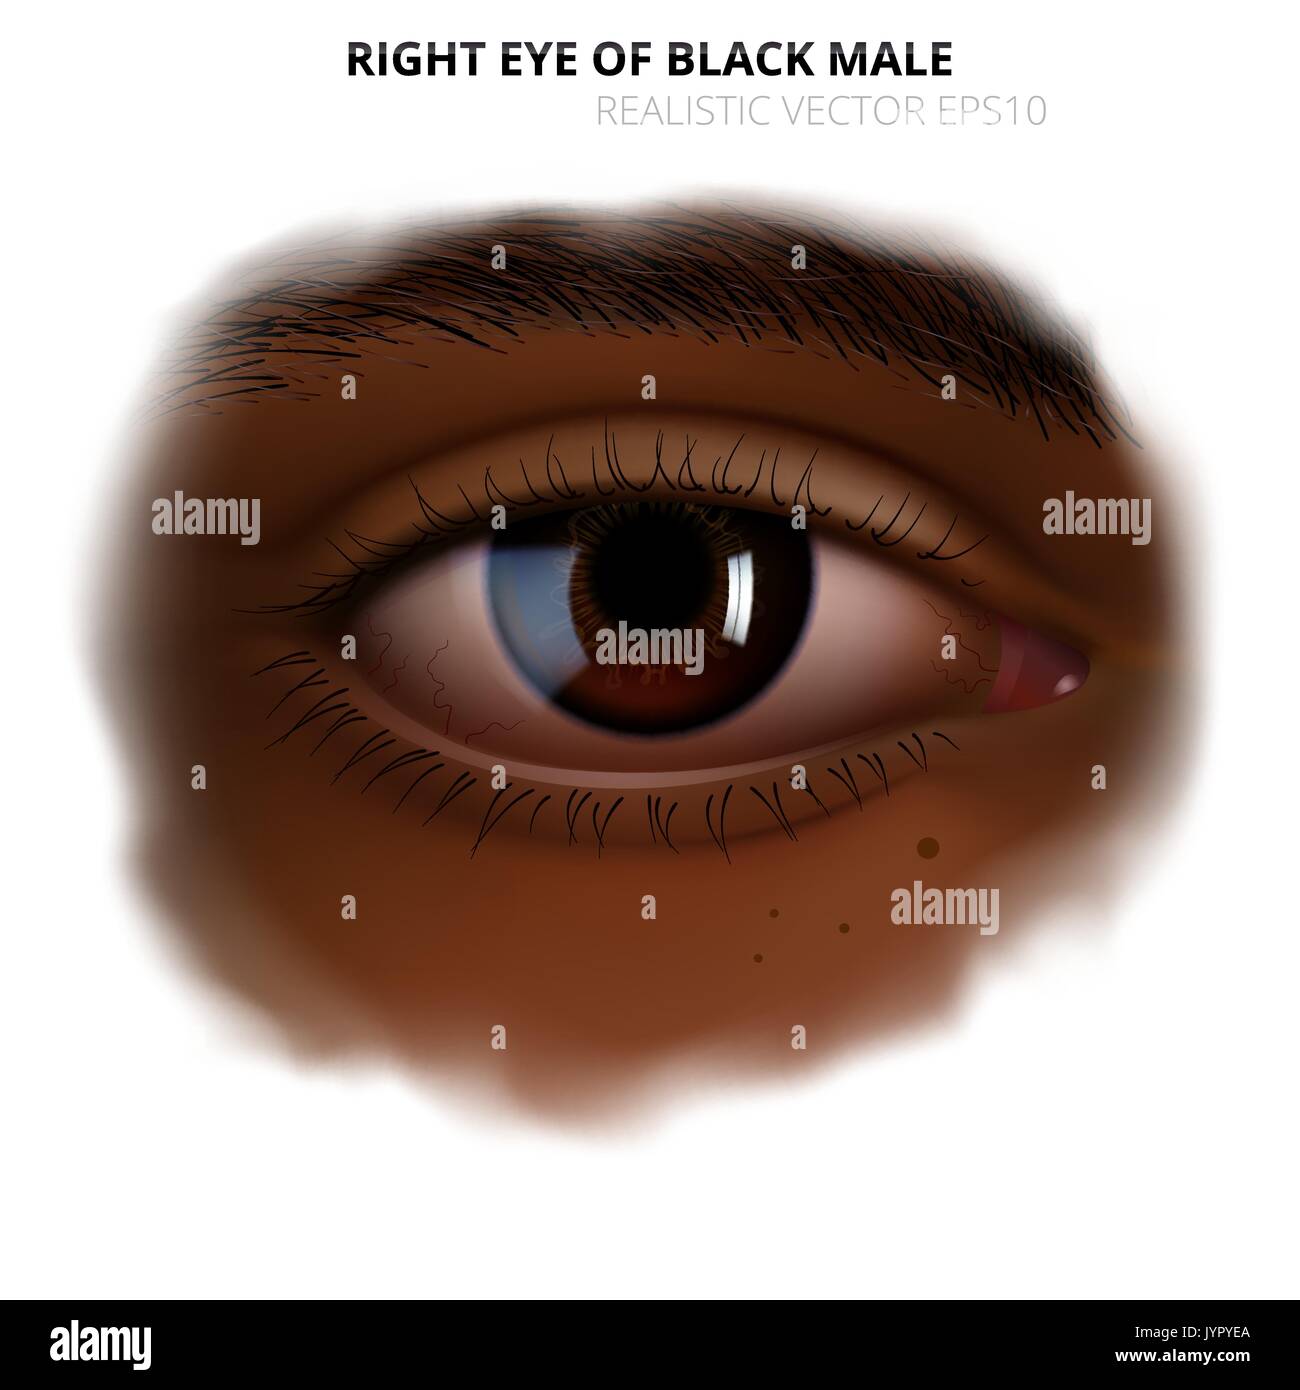 Realistische menschliche Auge. Das rechte Auge von Erwachsenen schwarze Frau oder Mann Detaillierte mit einer glänzenden braune Iris. Dunkle Haut von Gesicht mit einer unscharfen transparenten Rand. Stock Vektor